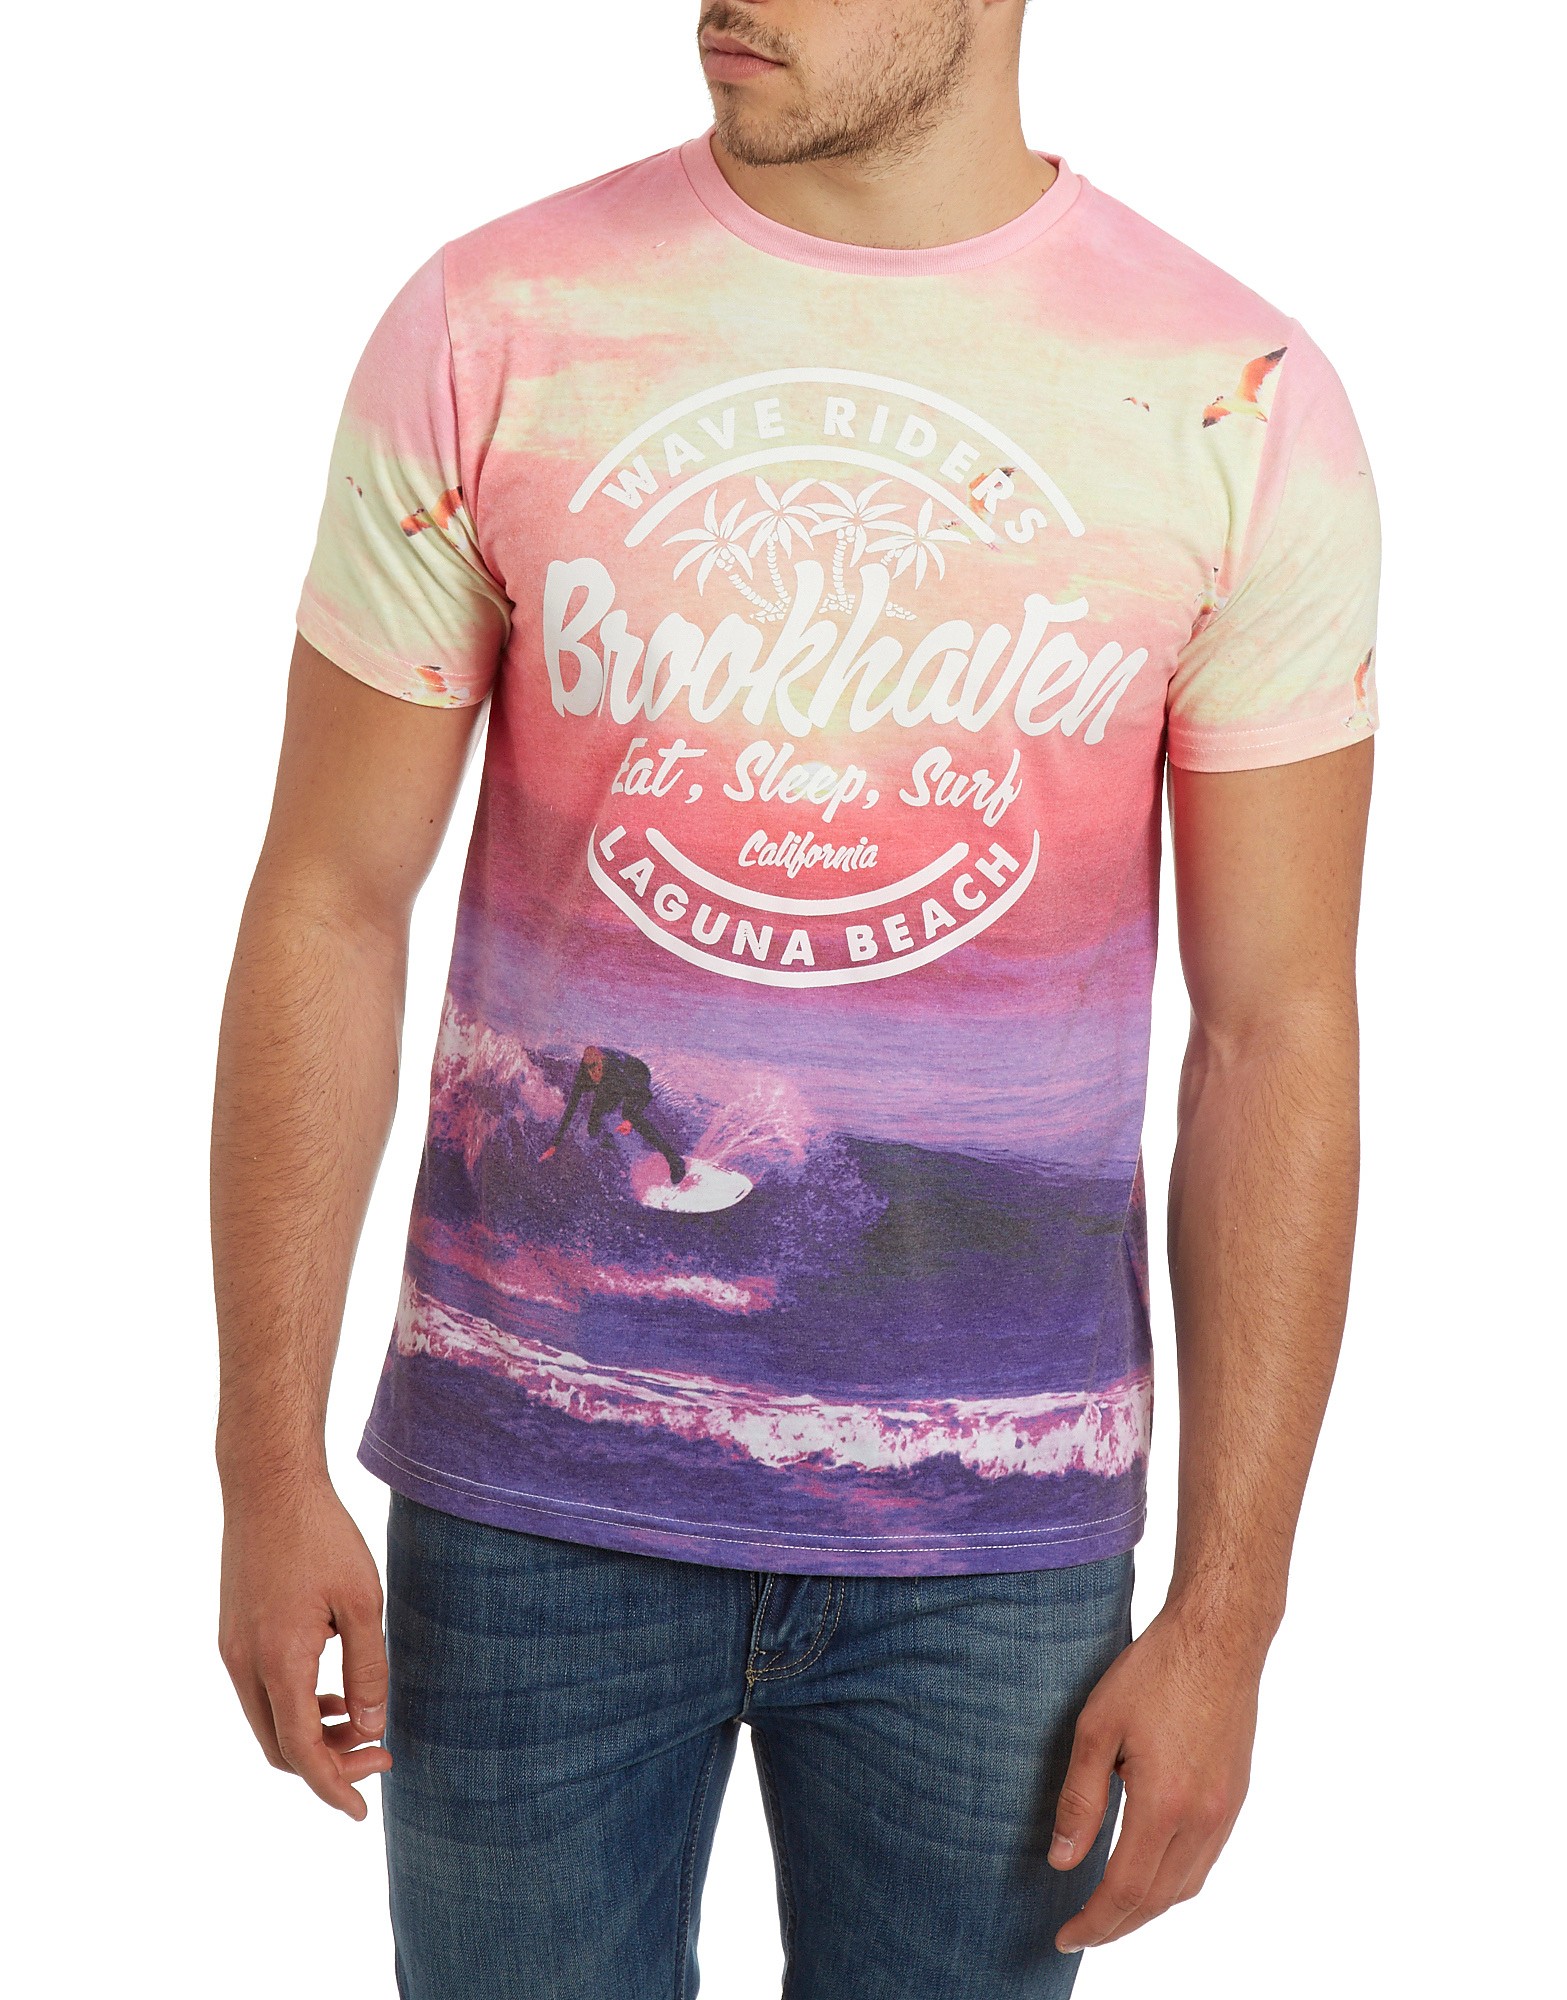 Brookhaven Surfer T-Shirt